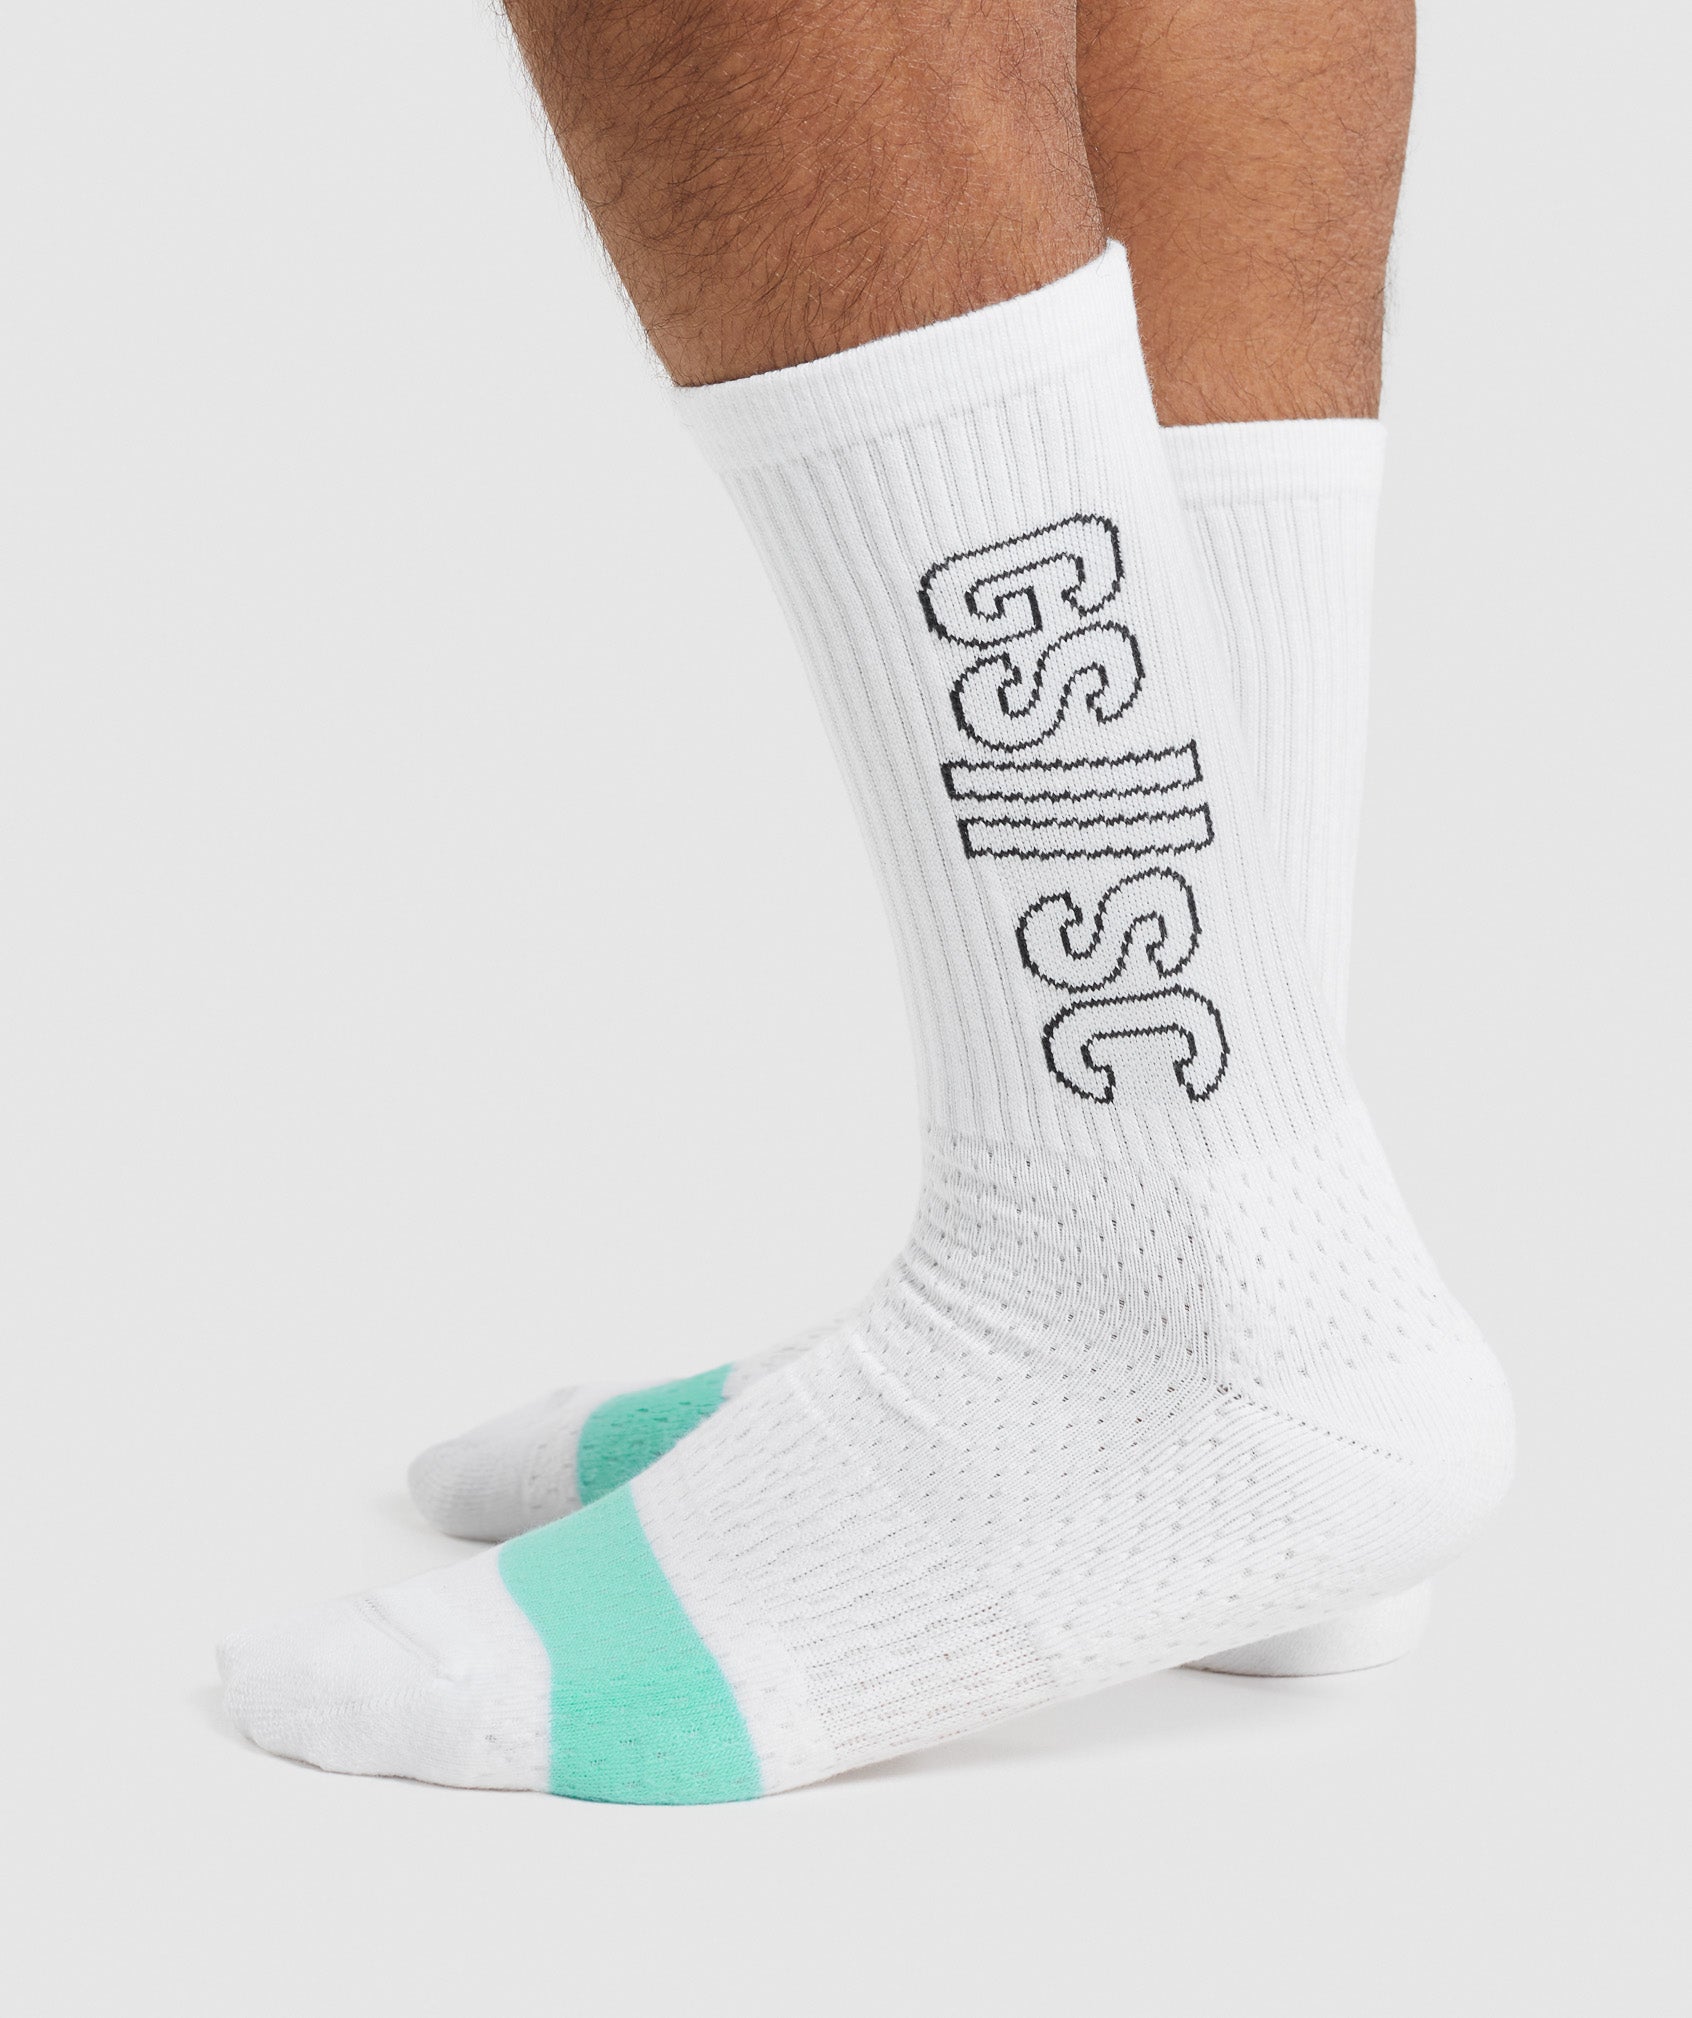 Gymshark//Steve Cook Crew Socks in White - view 3